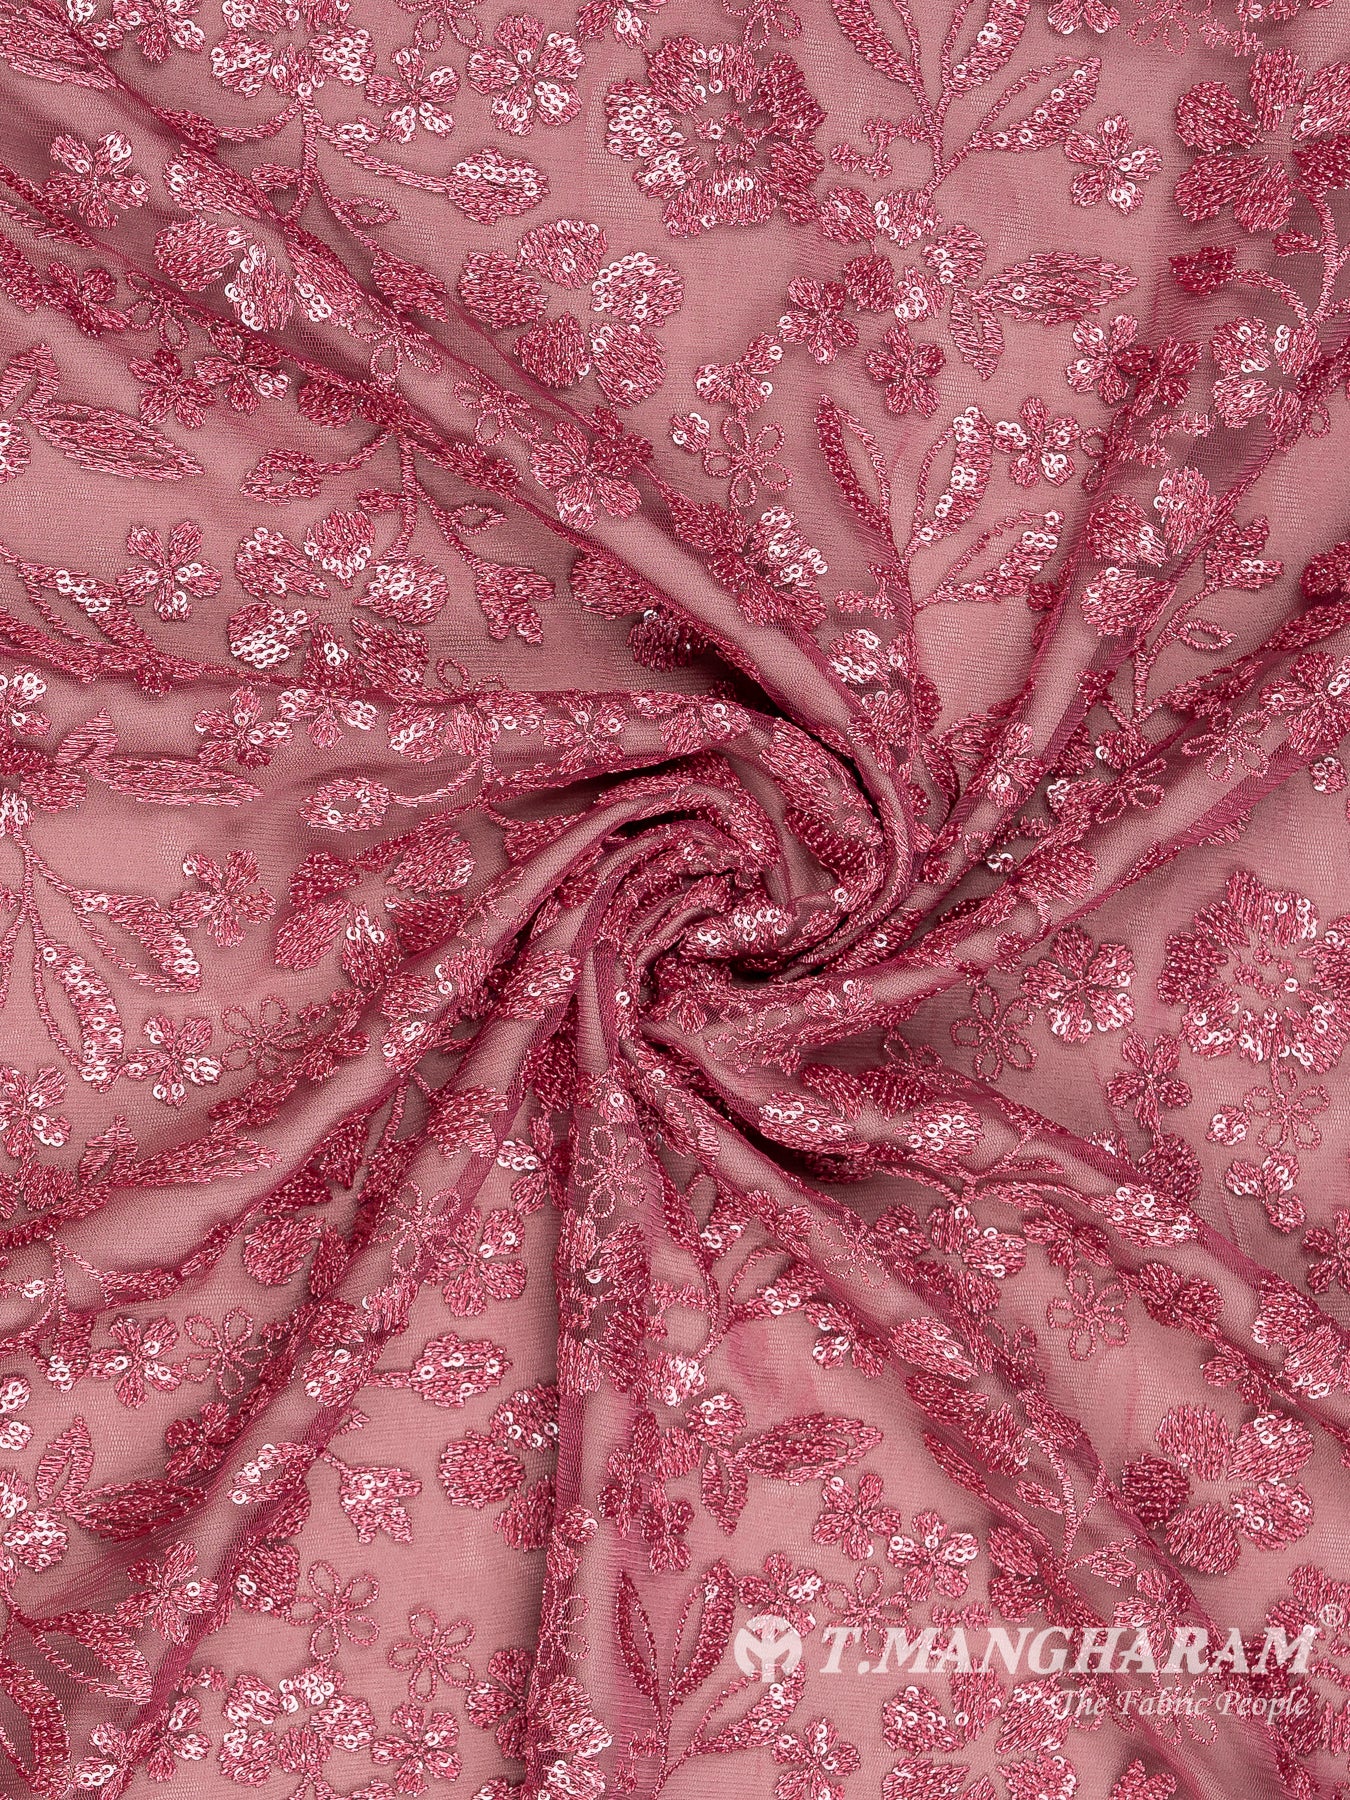 Pink Fancy Net Fabric - EC8102 view-1